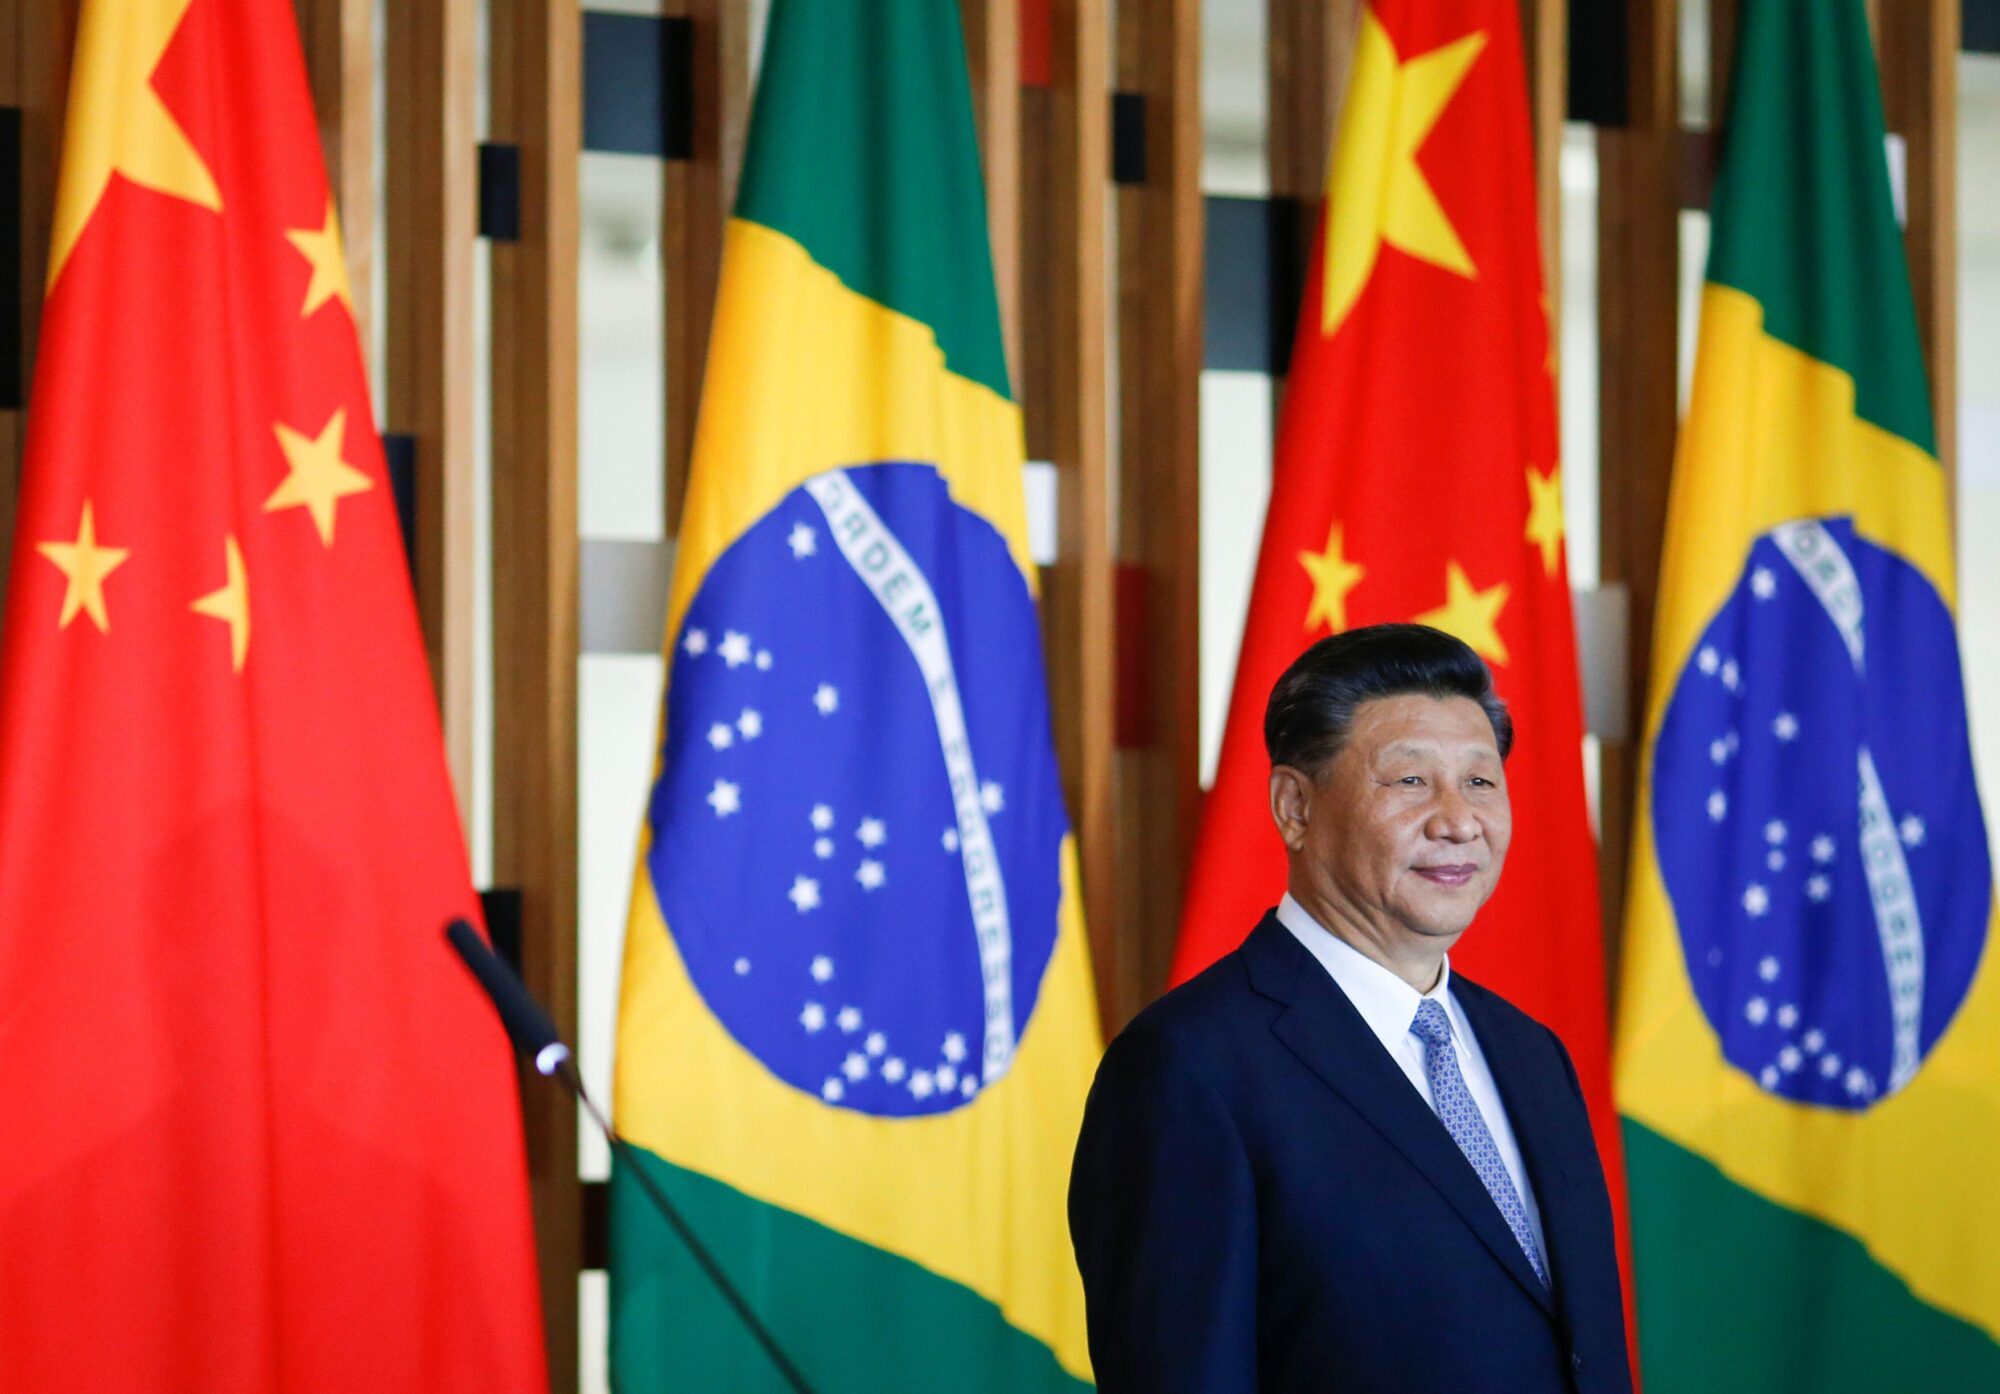 Xi Jinping em um evento em frente à bandeira brasileira